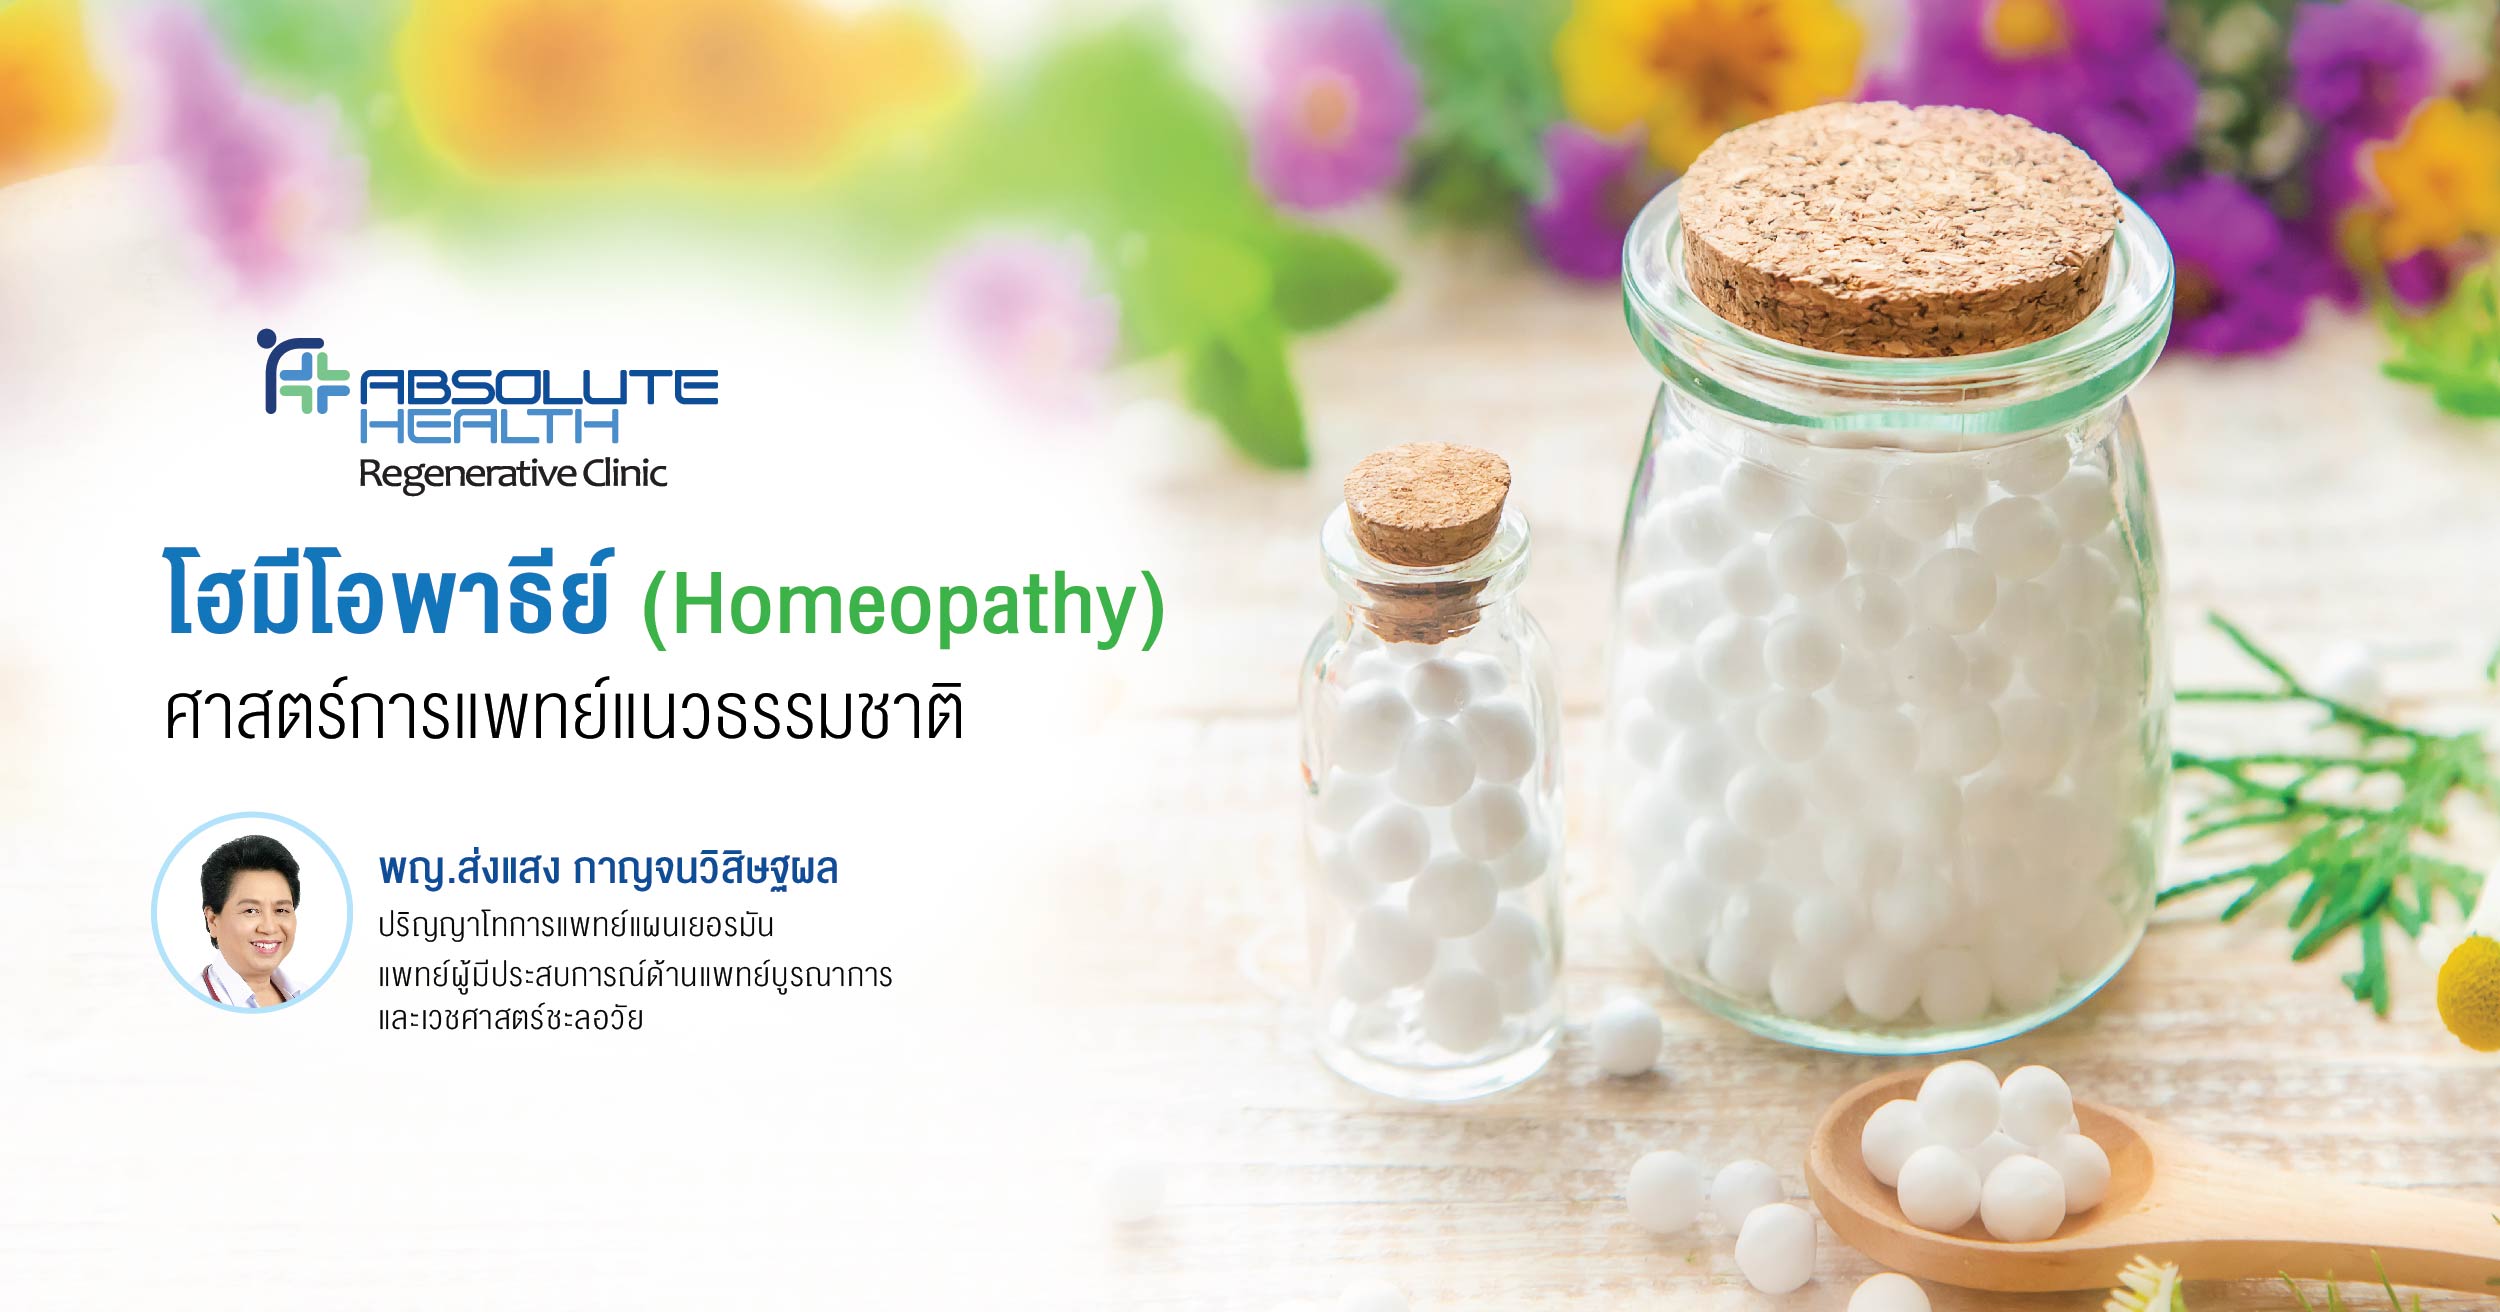 โฮมีโอพาธีย์  (Homeopathy) ศาสตร์การแพทย์แนวธรรมชาติ